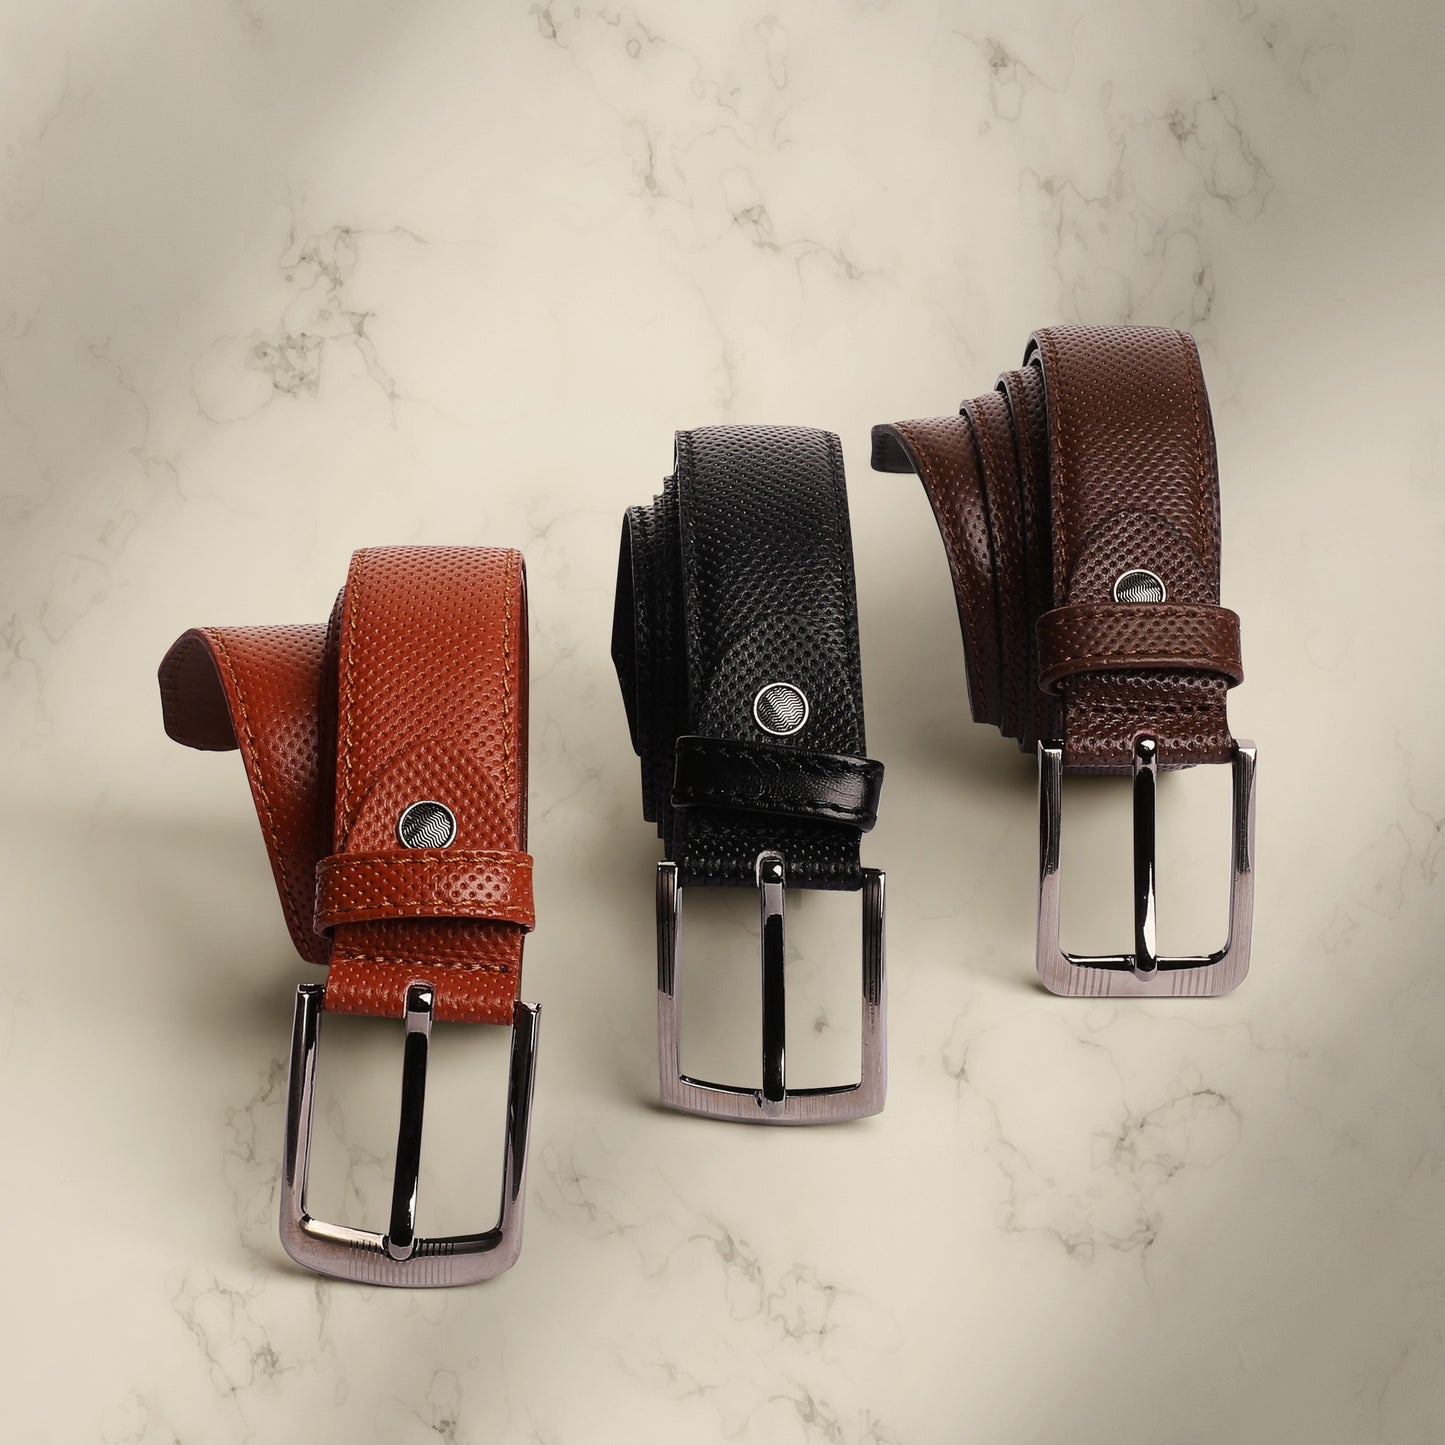 حزام رسمي كلاسيك فورمال وسيمي فورمال والبدلات من الجلد الطبيعي من تيستا تورو Testa Toro b10